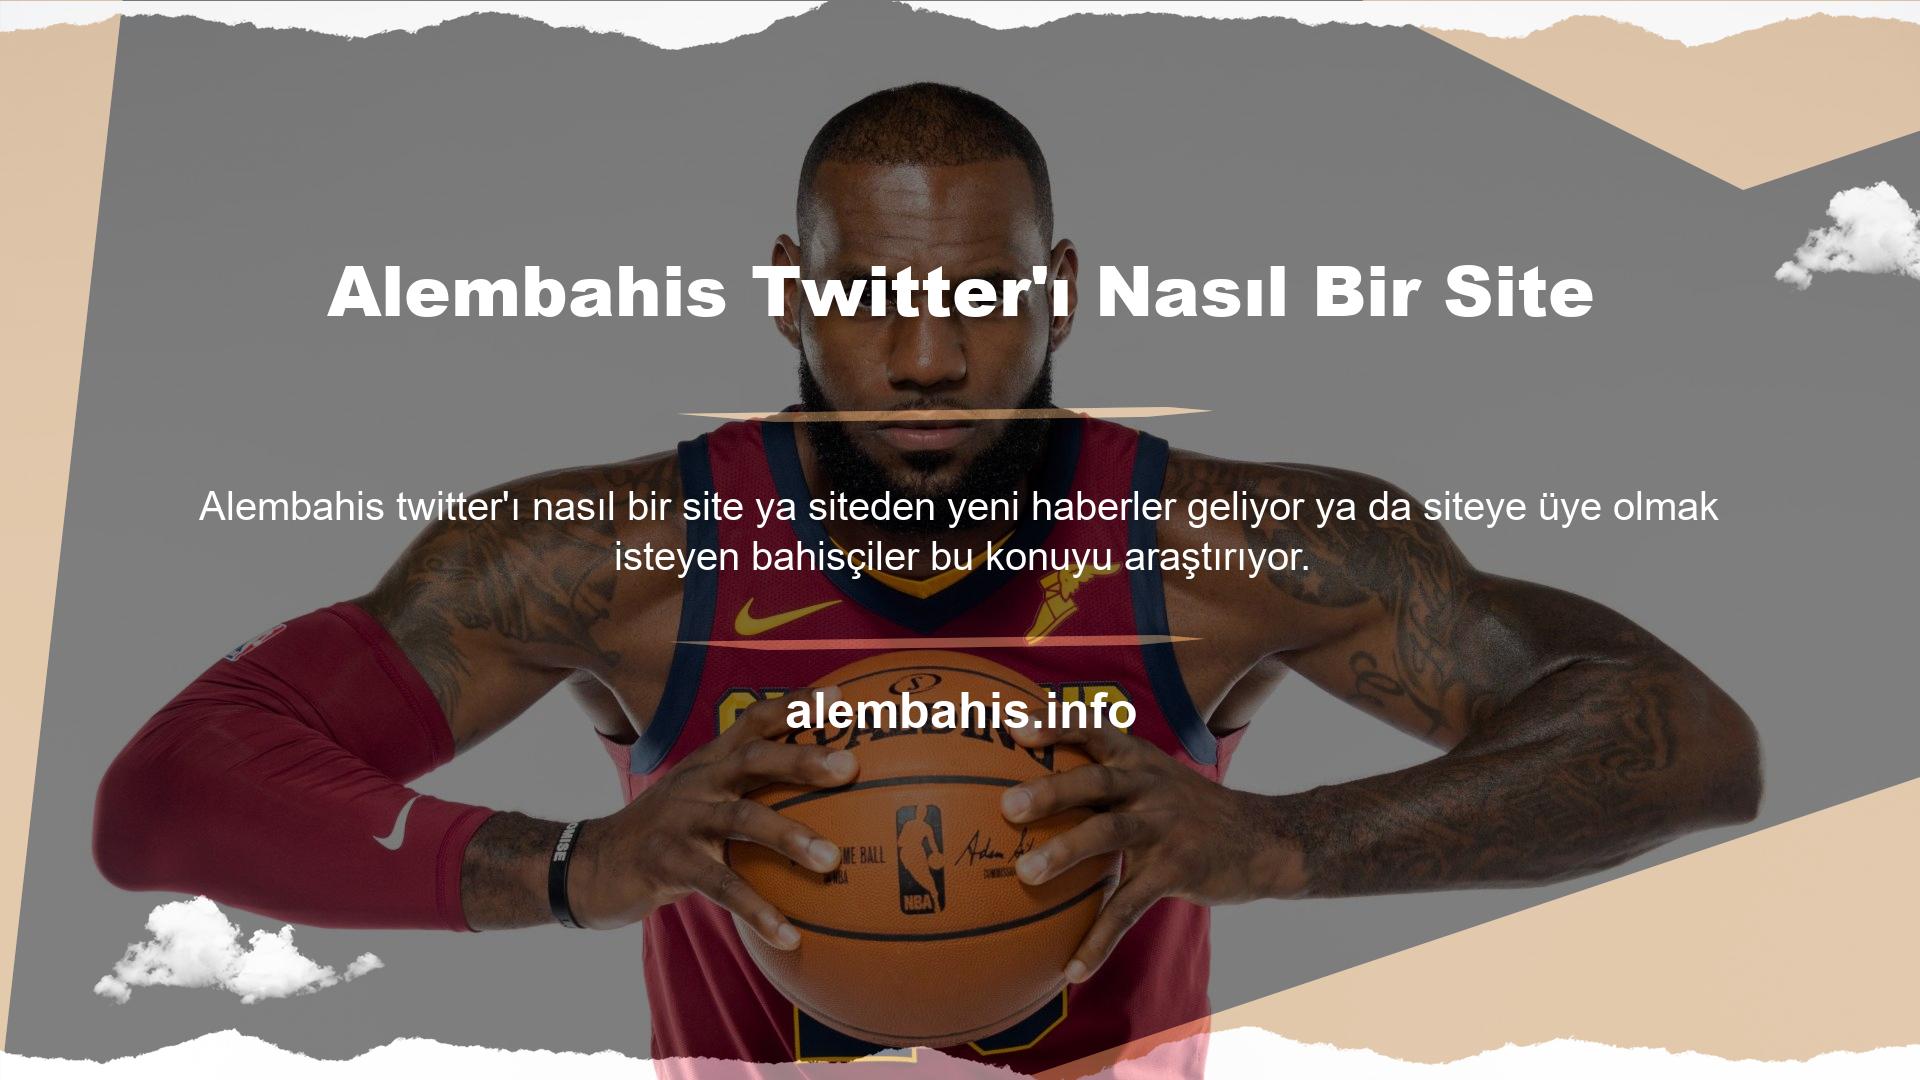 Site, lansmanından sonra hızla üne kavuşarak Türkiye'deki oyun hayranlarının da ilgisini çekti